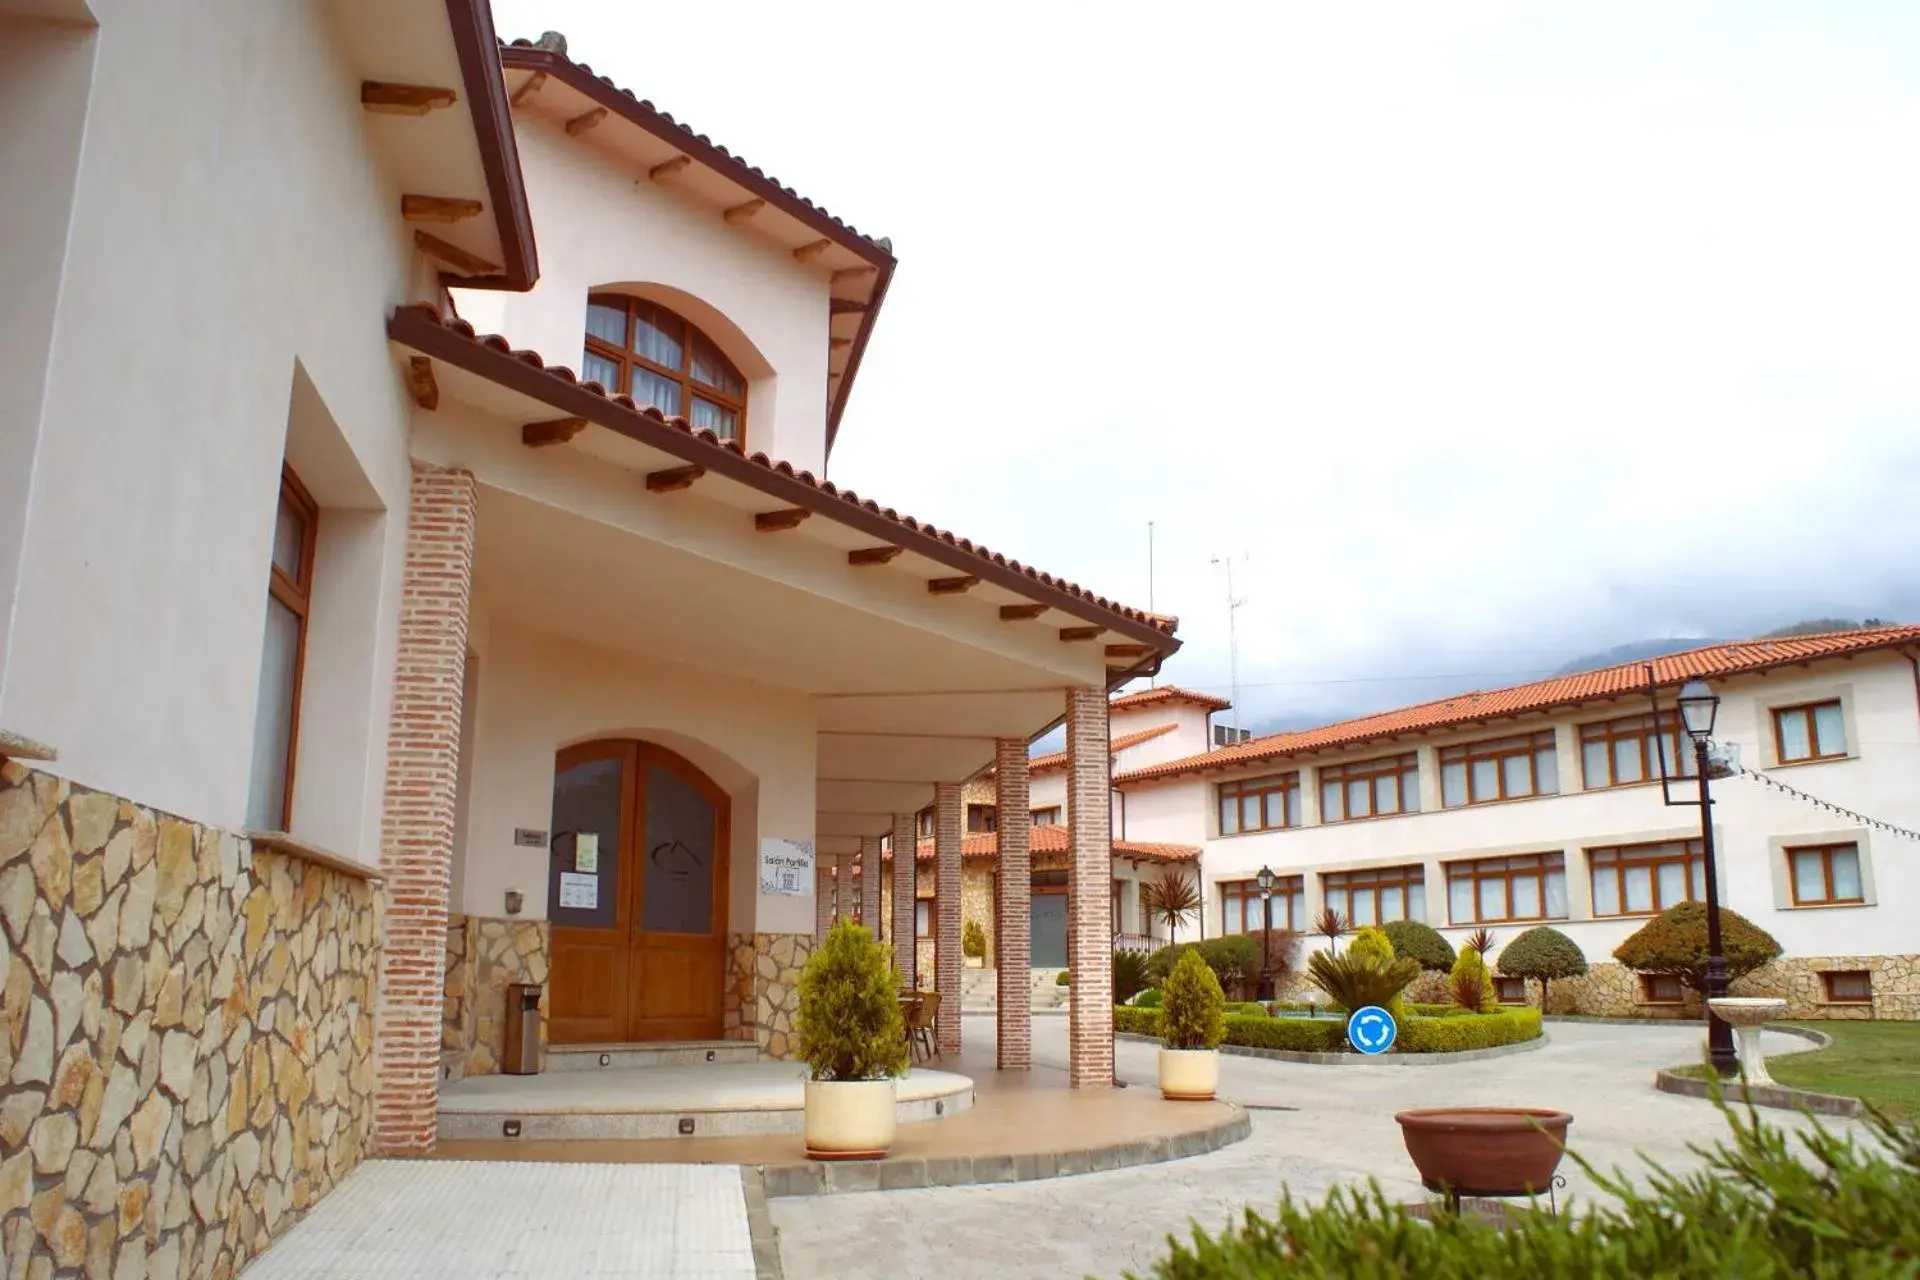 Property building in Mirador de La Portilla